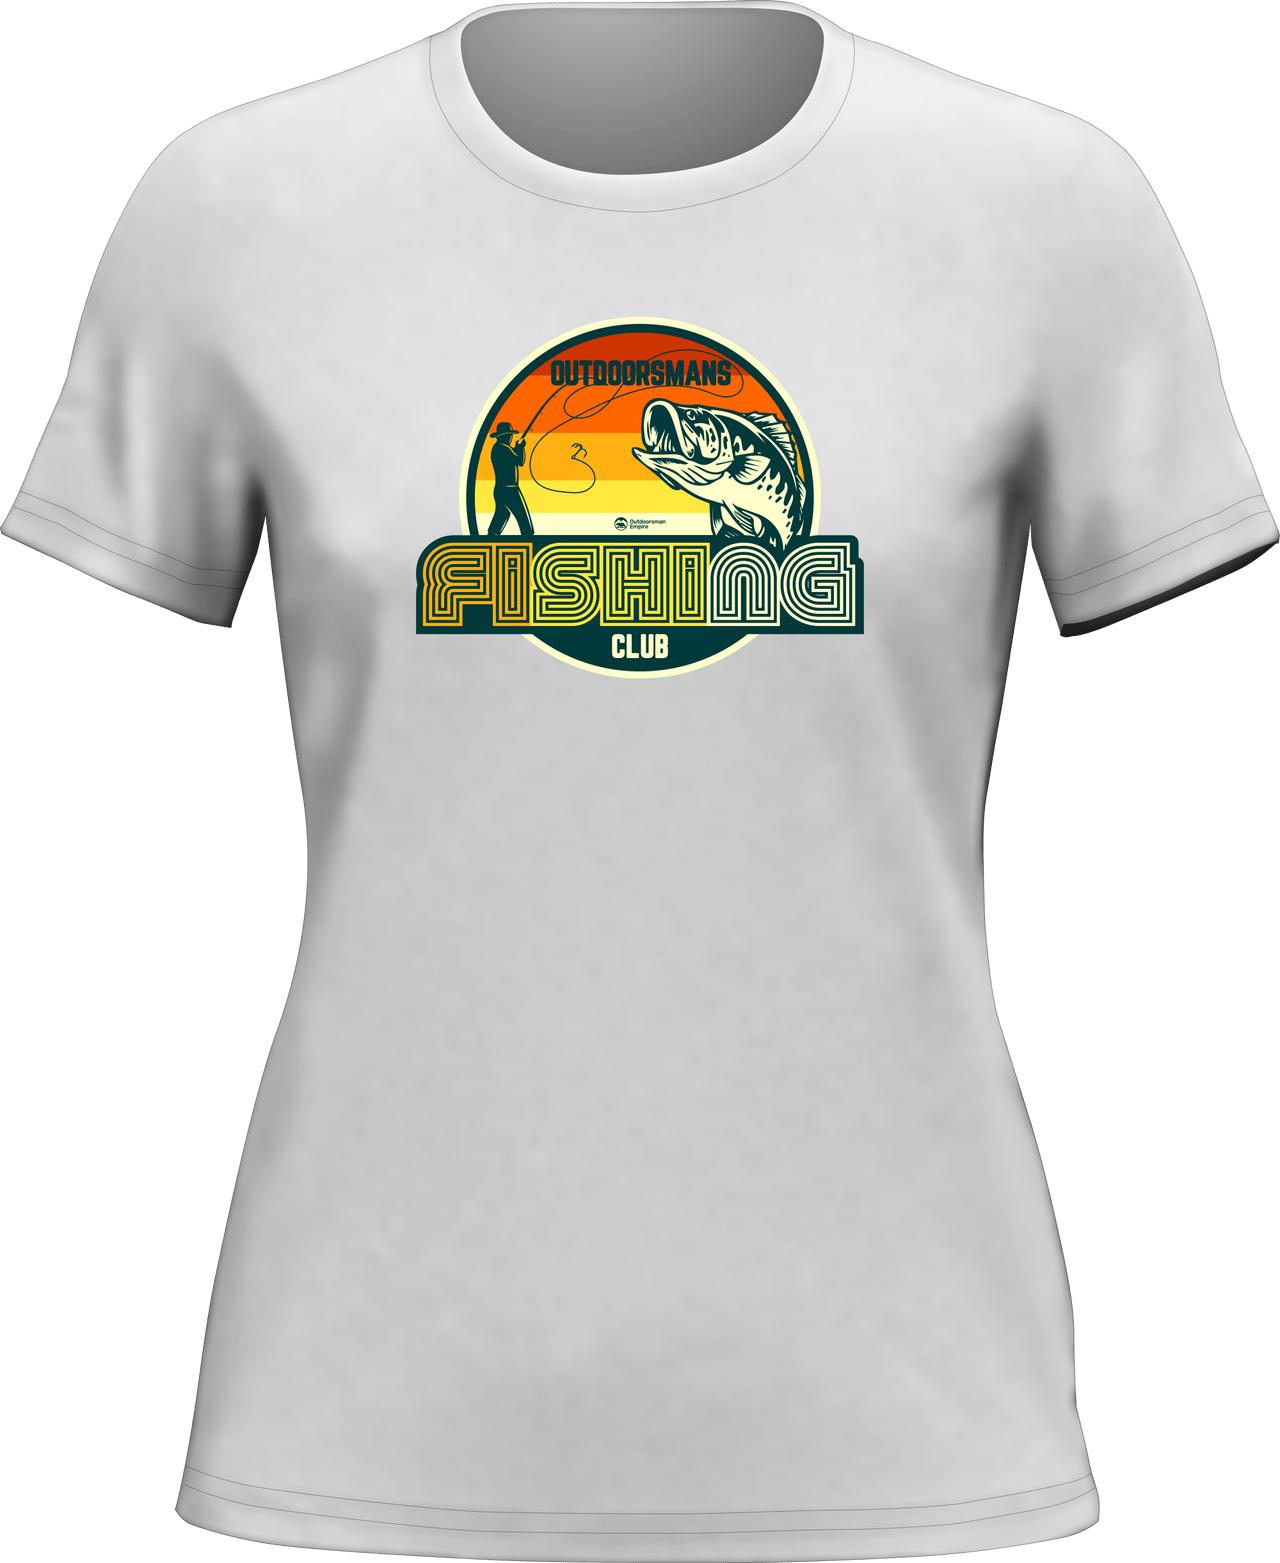 Outdoorsman Fishing Club 80 T-Shirt for Women